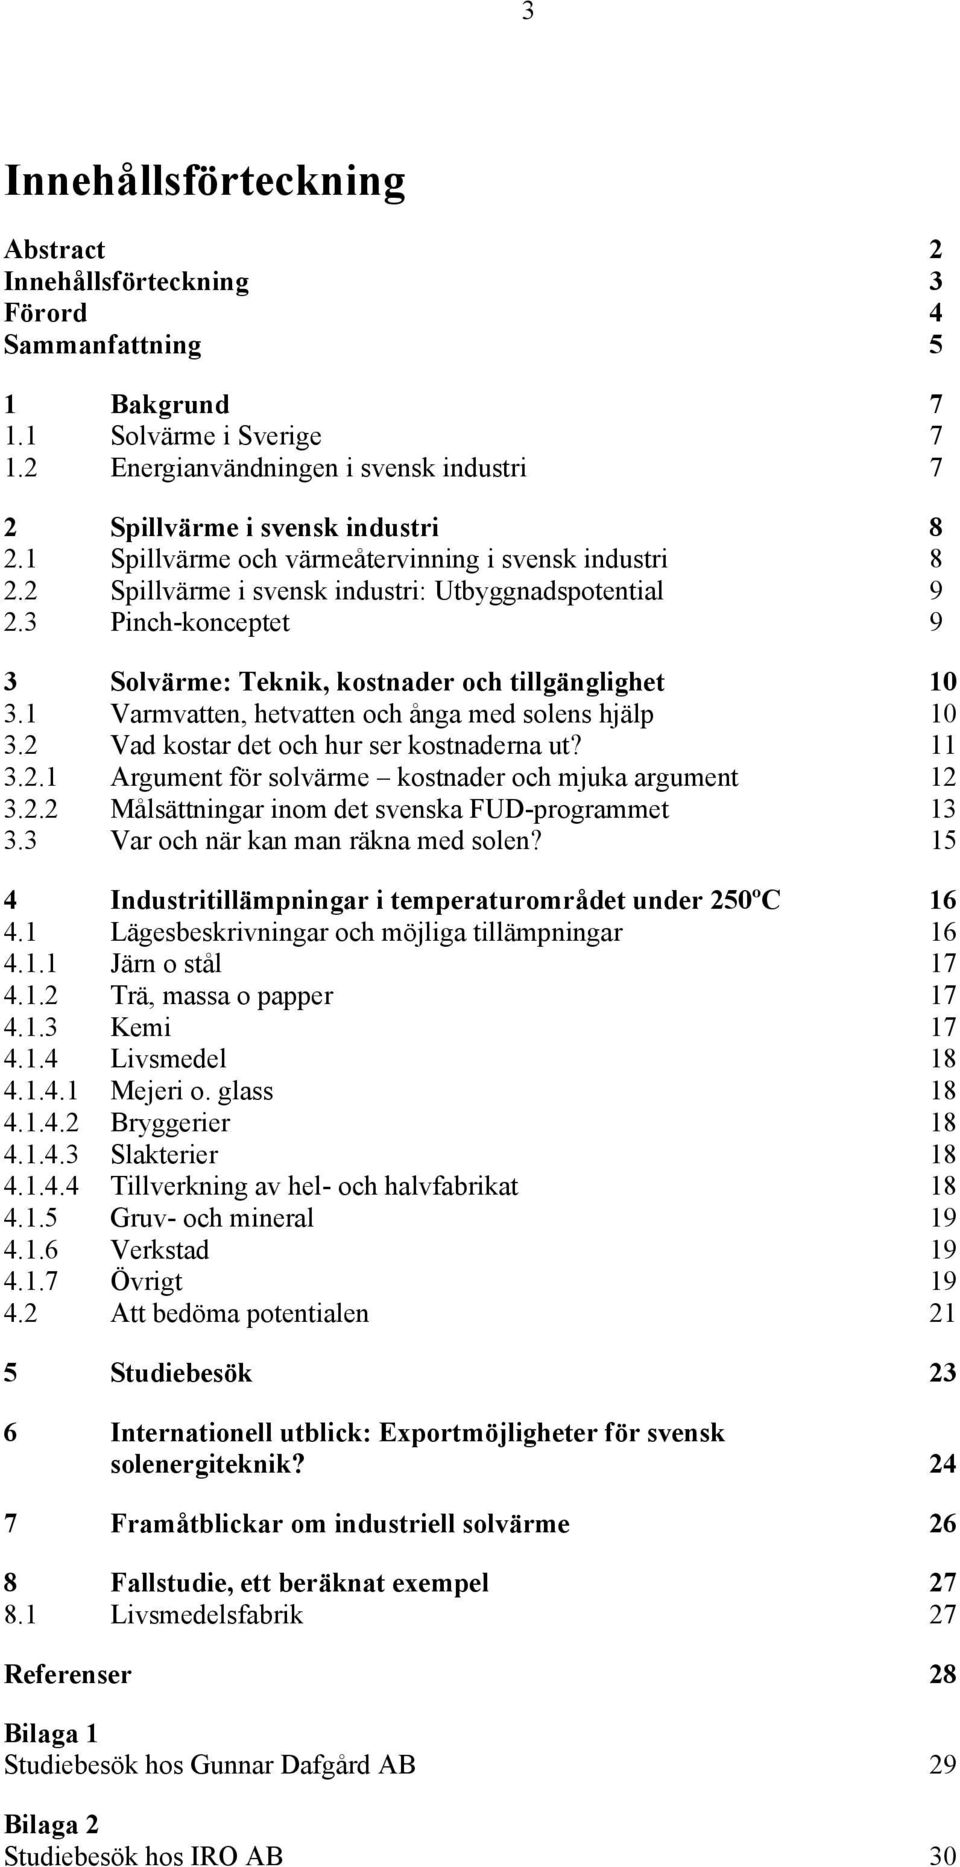 1 Varmvatten, hetvatten och ånga med solens hjälp 10 3.2 Vad kostar det och hur ser kostnaderna ut? 11 3.2.1 Argument för solvärme kostnader och mjuka argument 12 3.2.2 Målsättningar inom det svenska FUD-programmet 13 3.